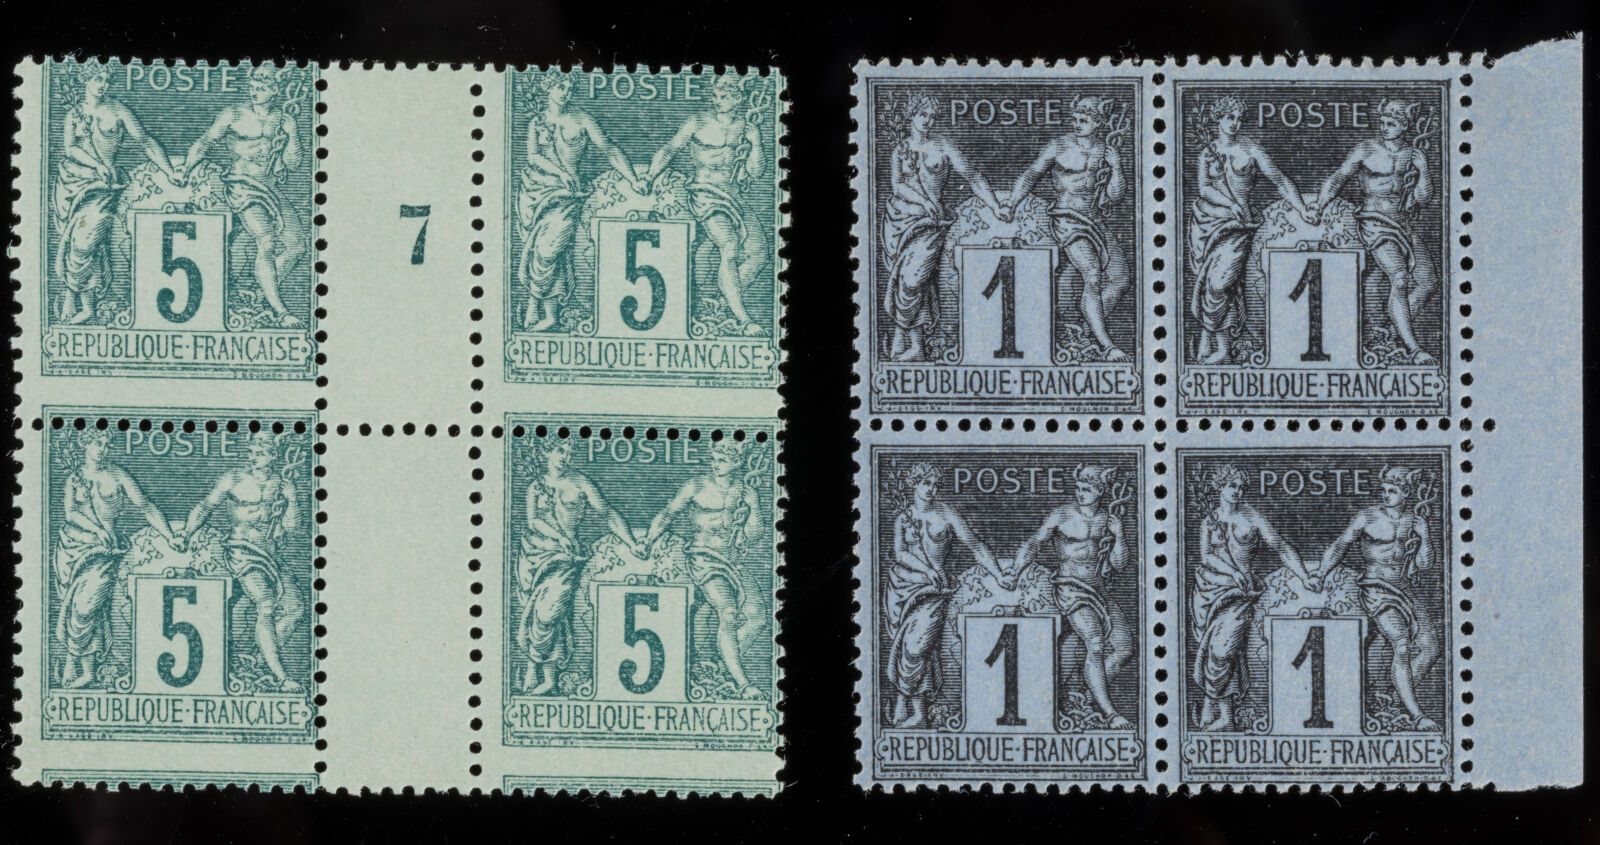 Null N°75 II型邮票 - 一套4枚邮票：5c绿色，带移动绗缝和Vintage 7，豪华品质，价值250欧元。

第二类邮票N°83 - 一套4枚邮票：&hellip;